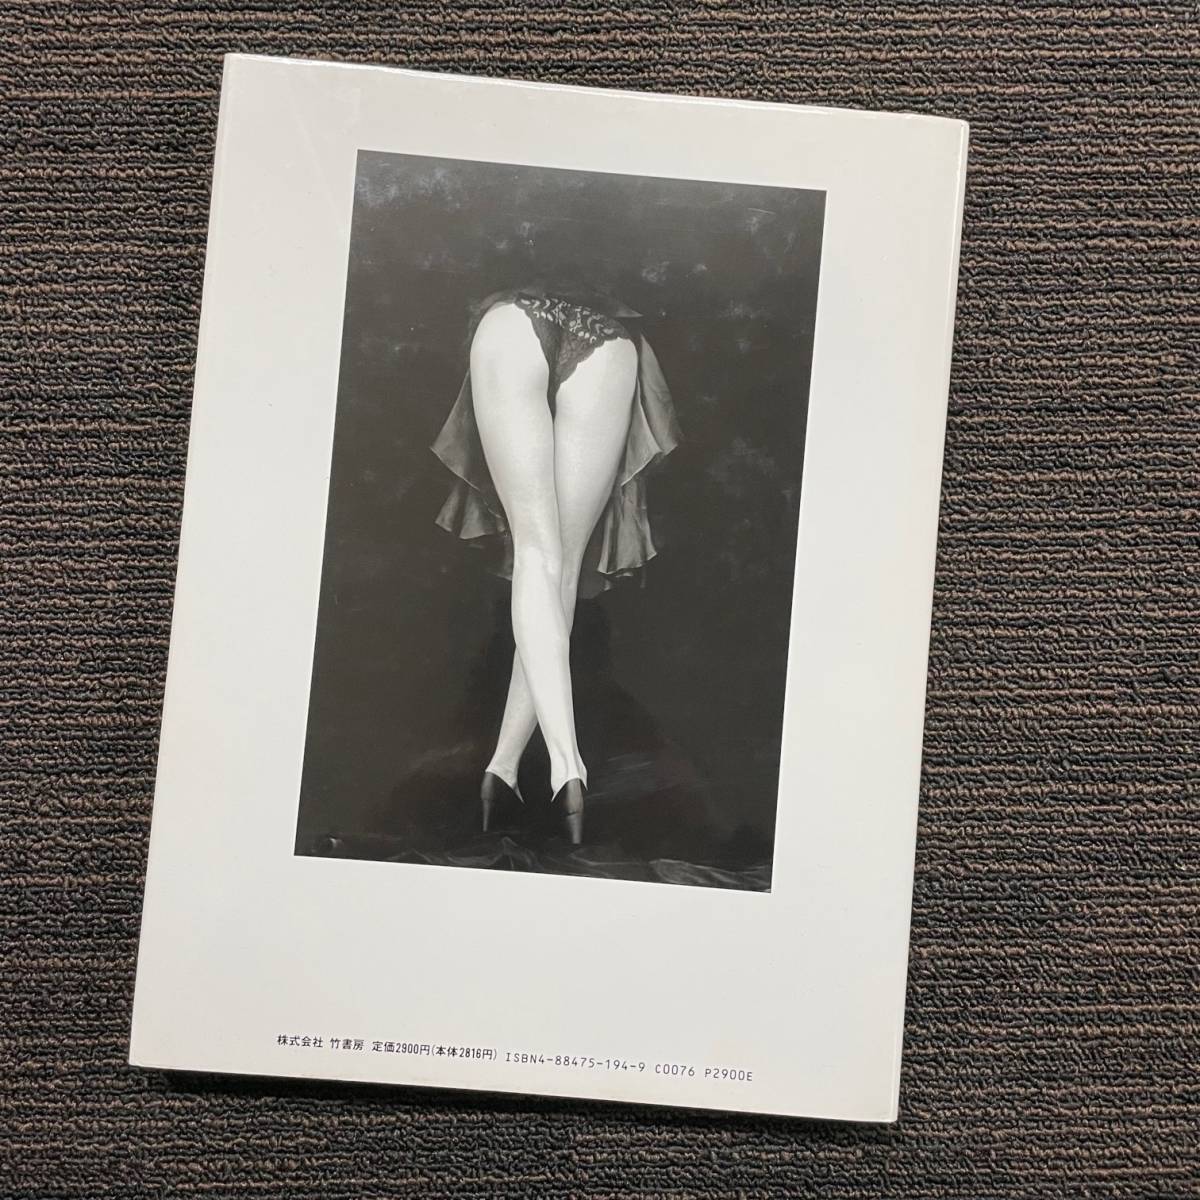  б/у товары долгосрочного хранения Murakami Rikako фотоальбом With an essay RIKACO